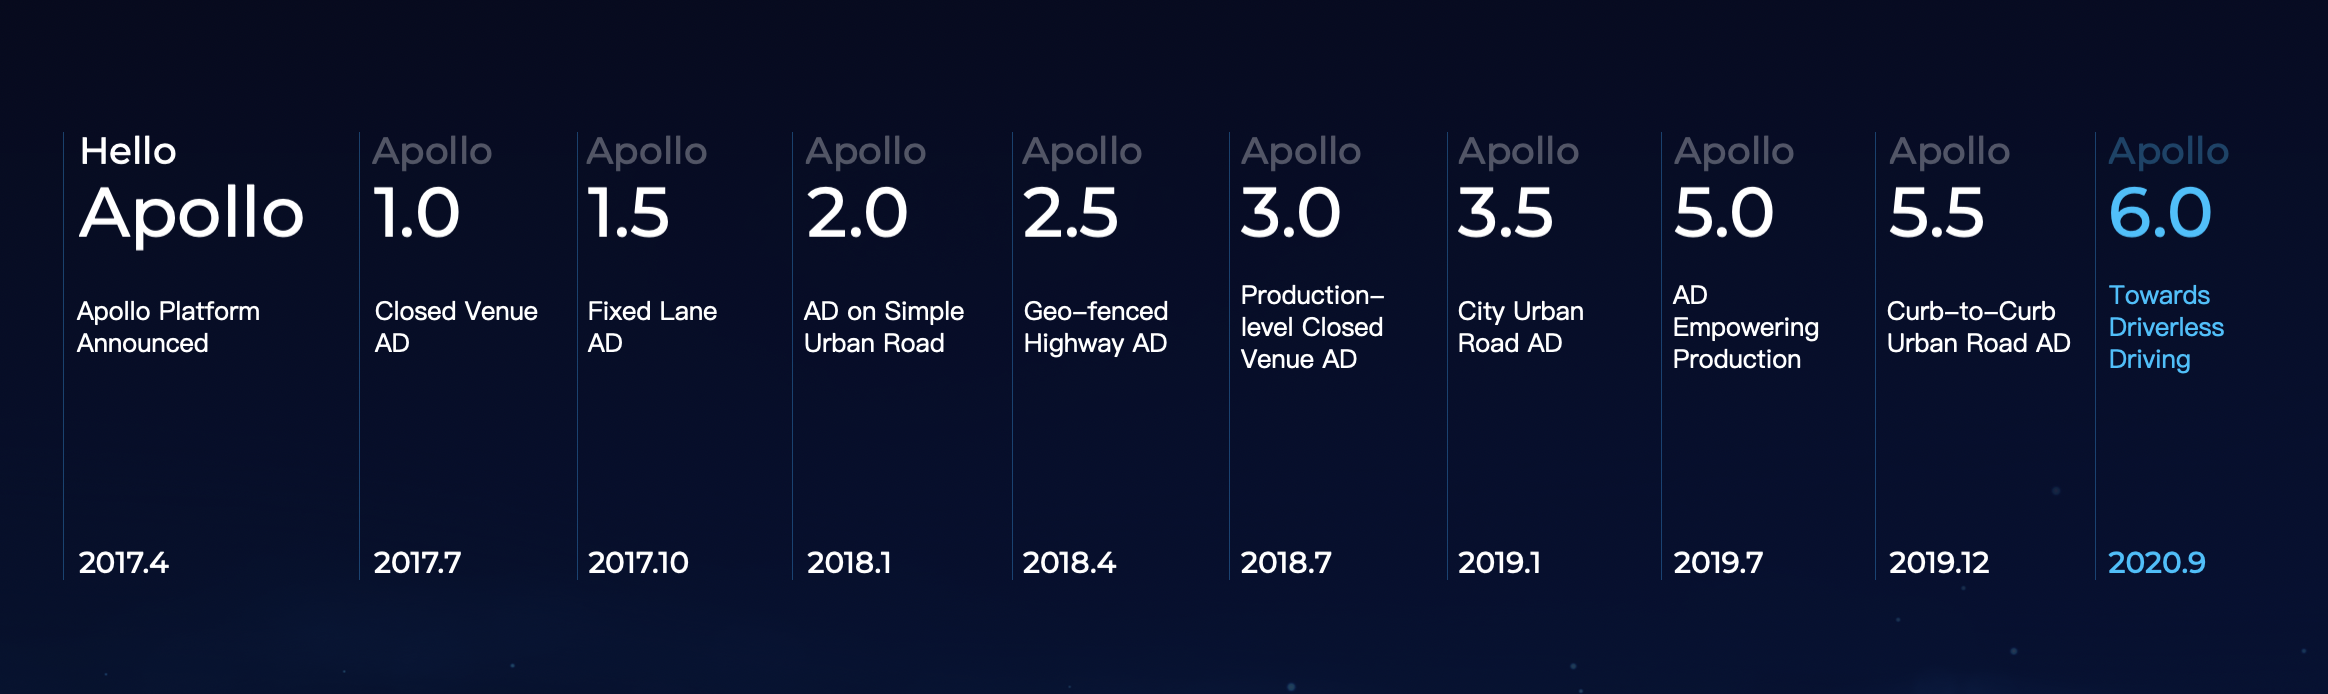 Apollo_Roadmap_6_0.png